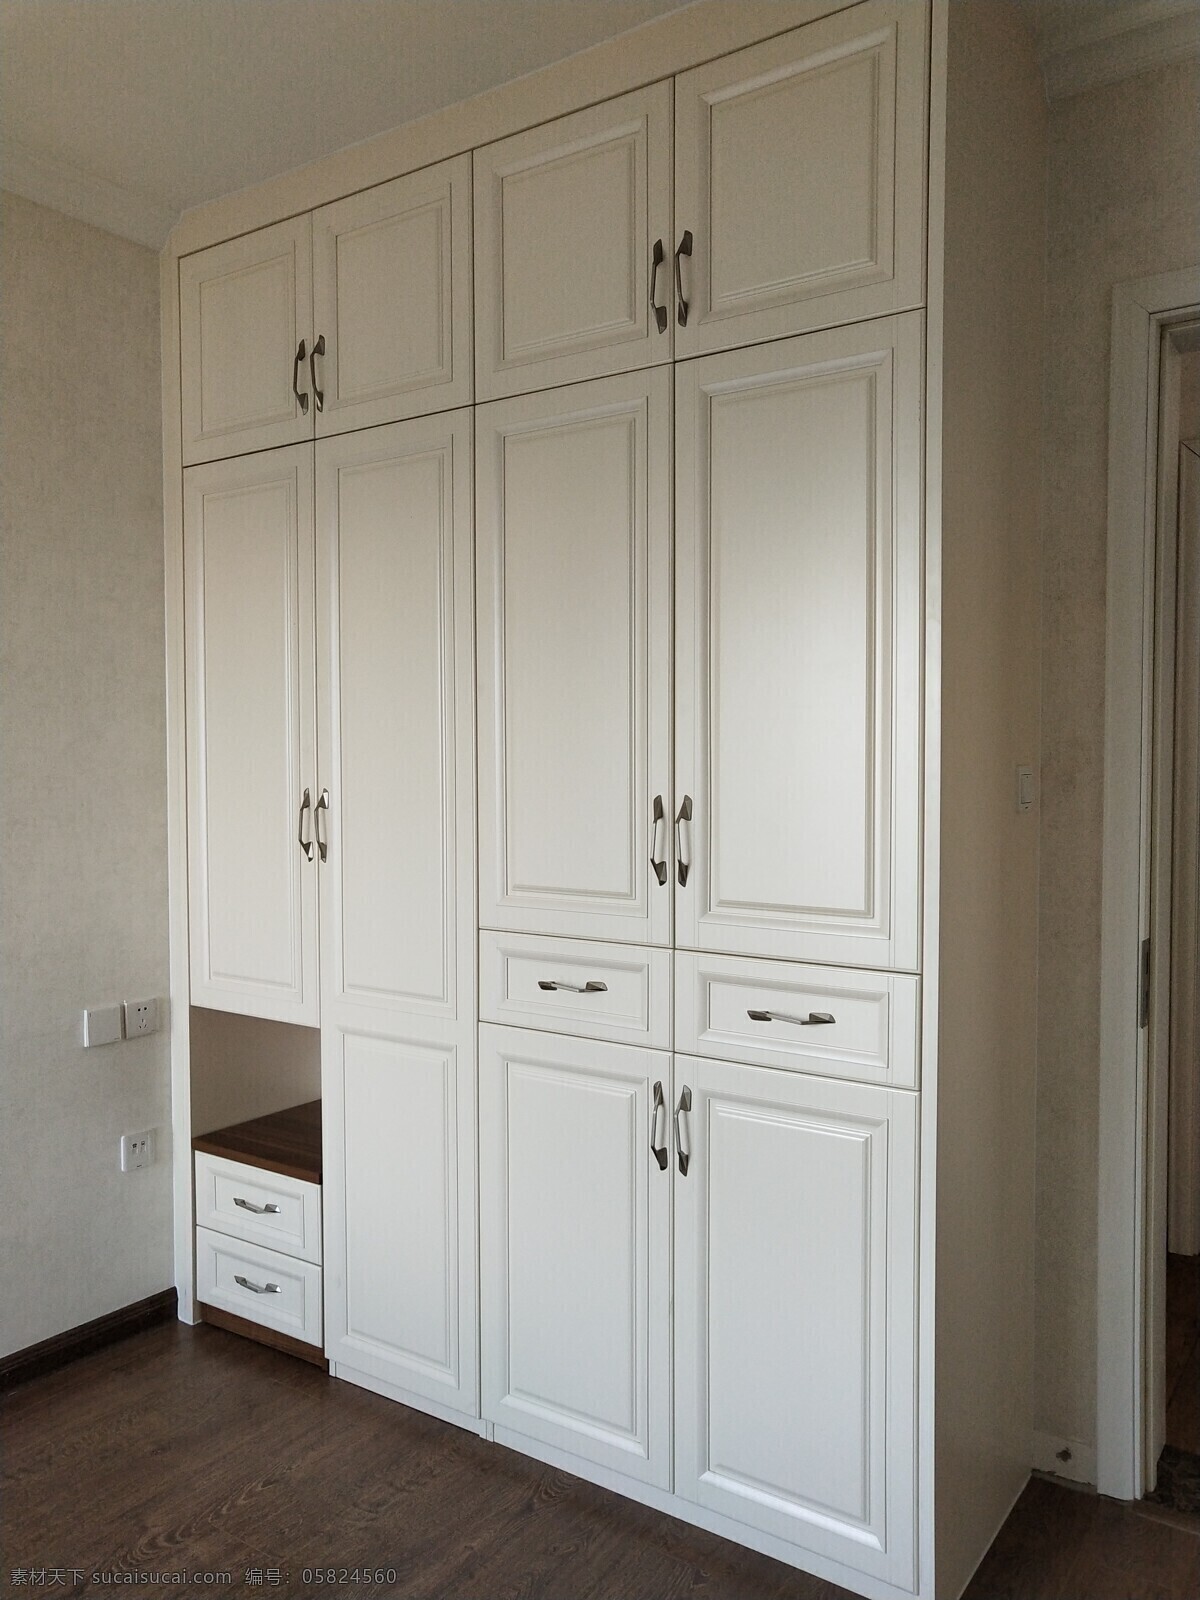 衣柜 简欧 欧式 造型 卧室 现代 简约 美式 家具米白色 白色 全屋定制 室内家具 建筑园林 室内摄影